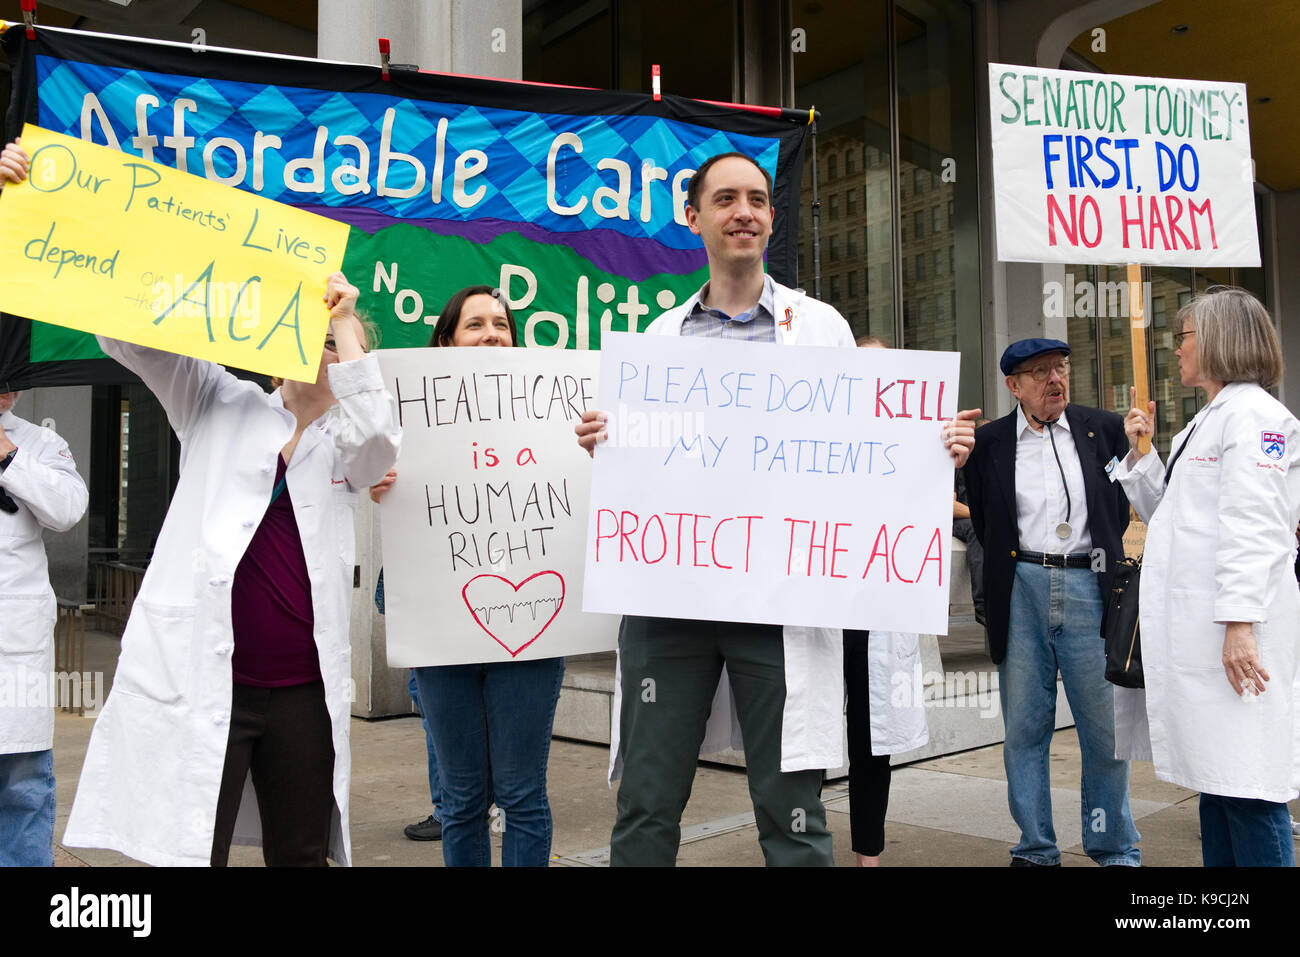 Philadelphia, PA, USA - 25 de febrero de 2017; los médicos están entre los cientos protestaban contra la propuesta de derogación de la Ley de atención asequible por el Trump-Admin Foto de stock